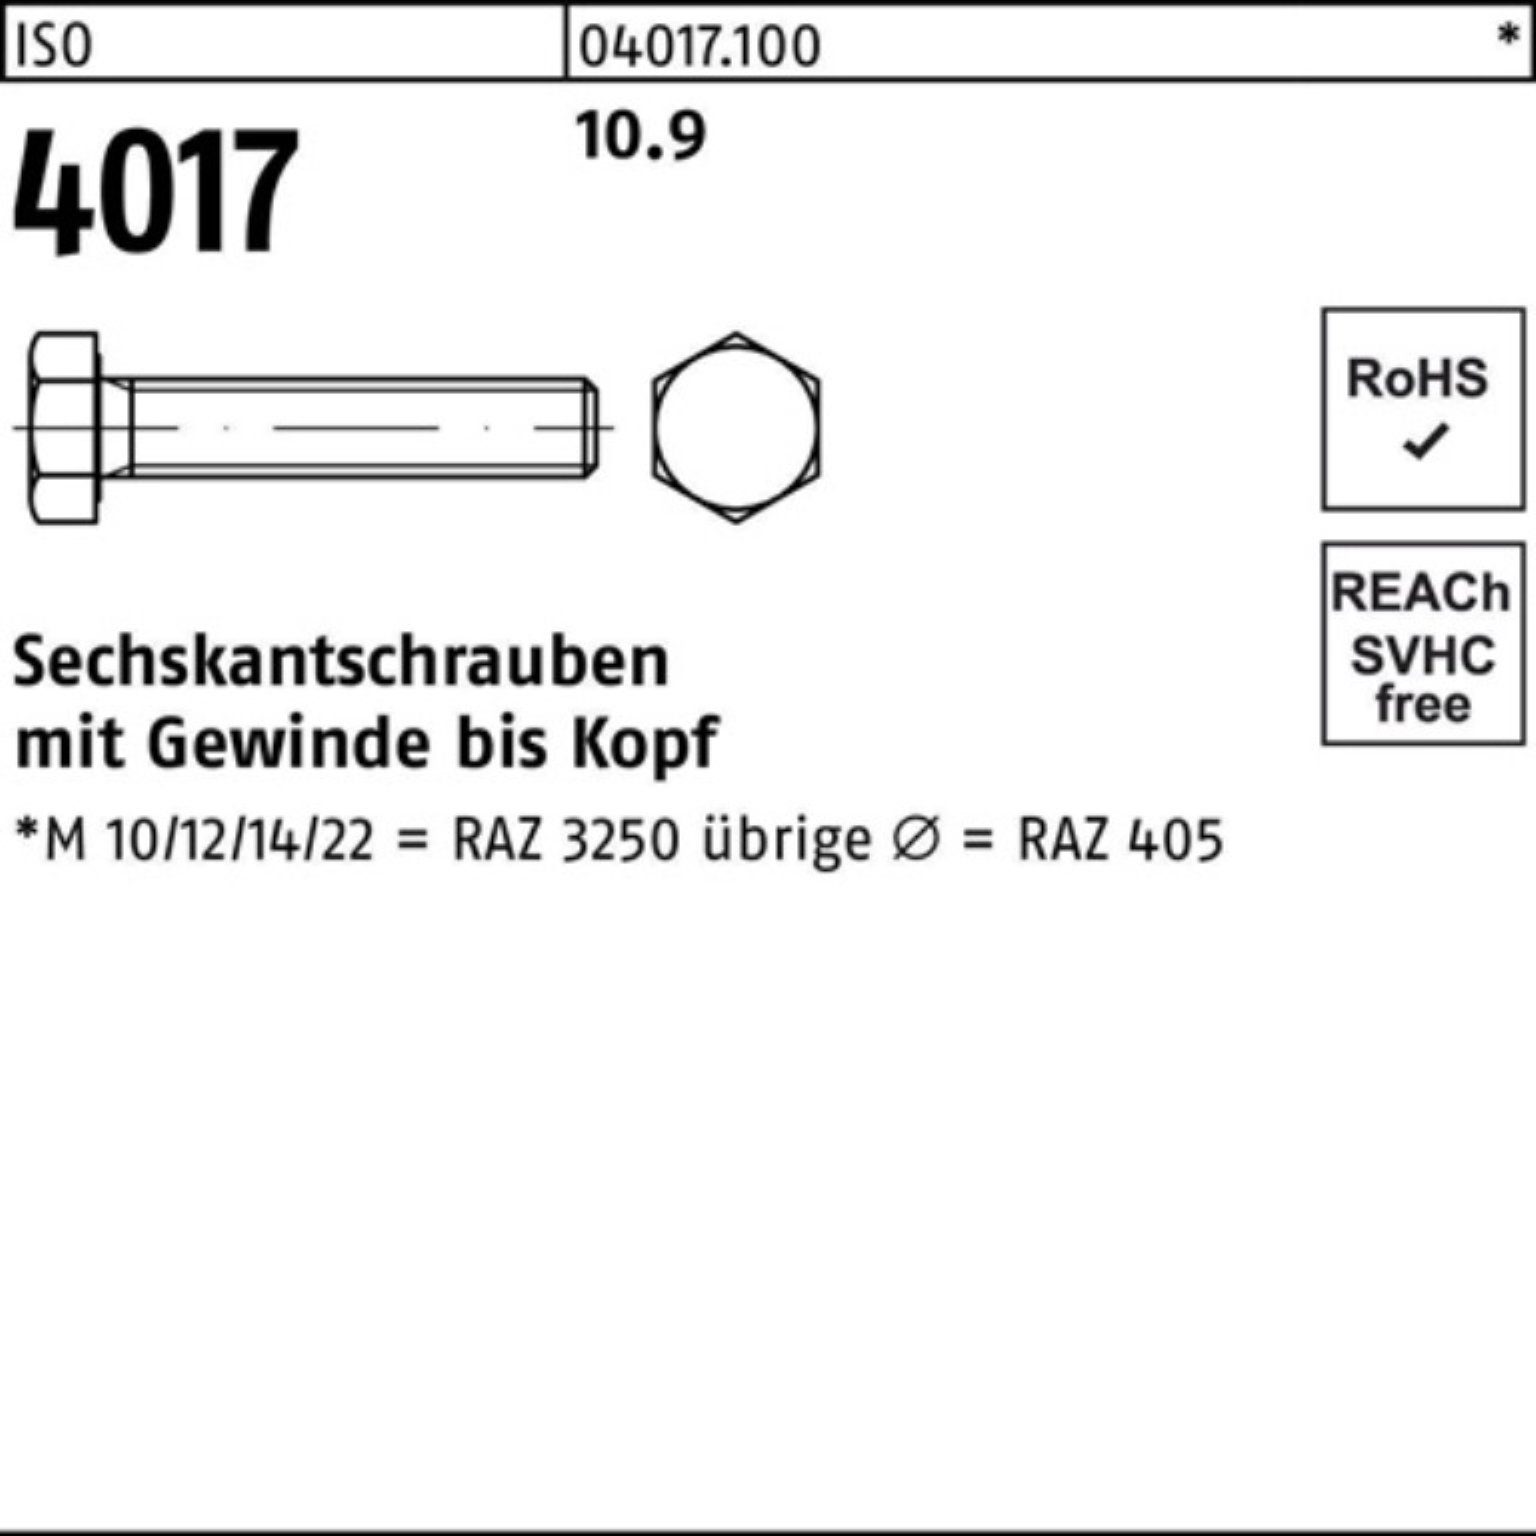 Sechskantschraube Sechskantschraube M20x VG 4017 10.9 100er 80 25 Bufab 40 ISO Stück Pack ISO